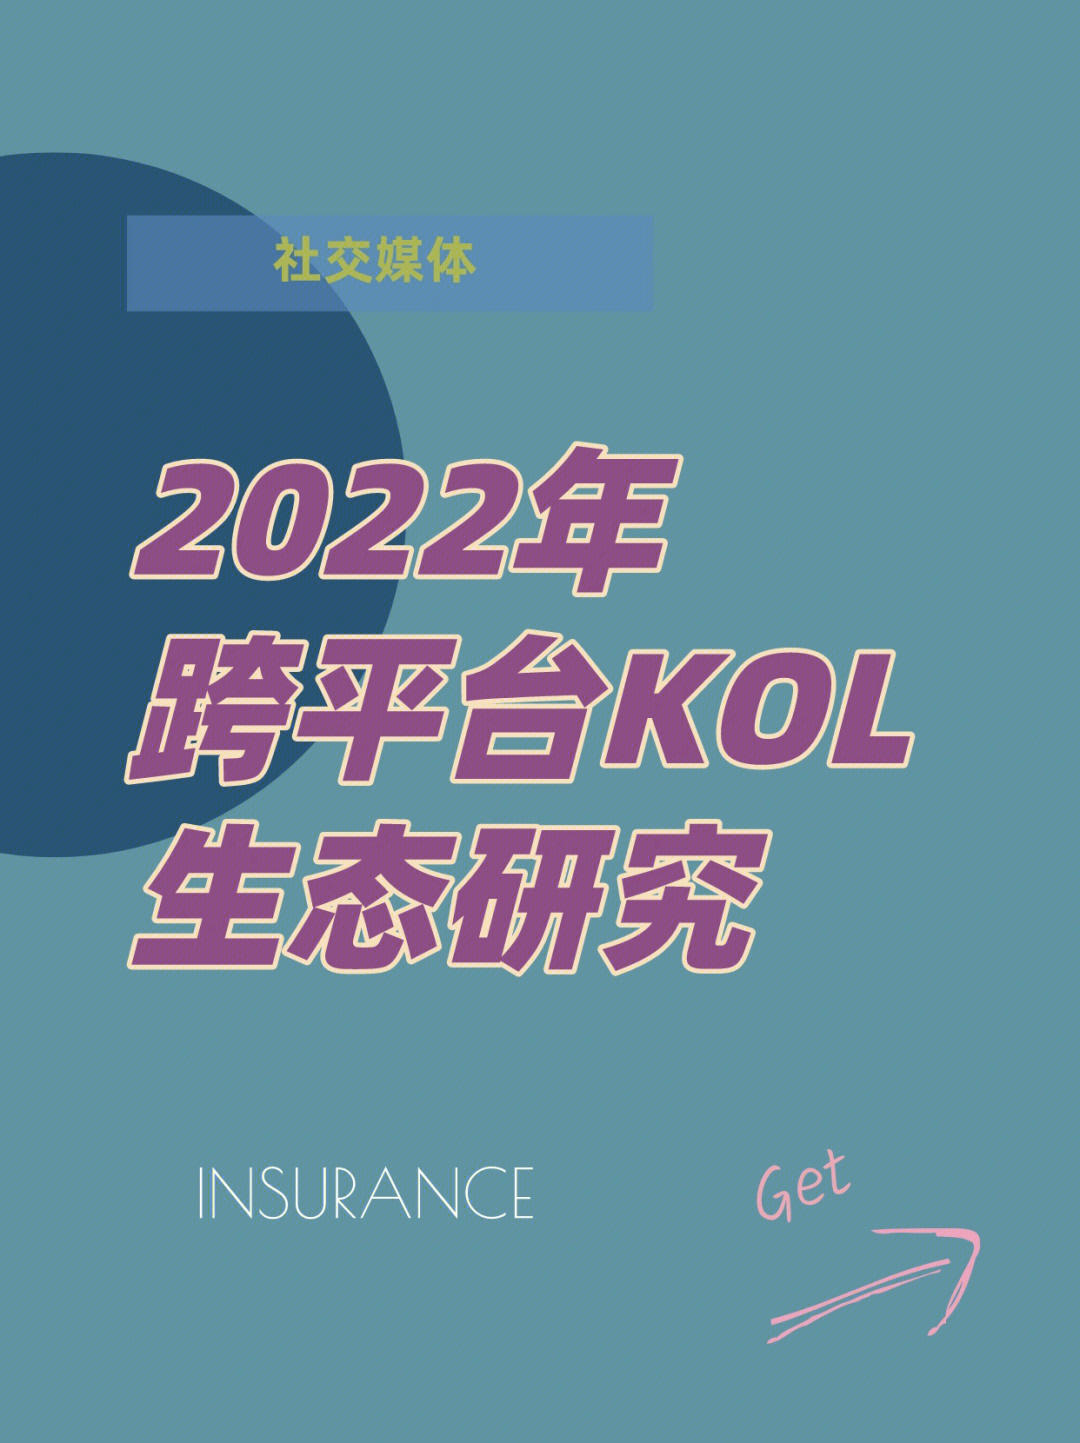 2022年跨平台kol生态研究社交媒体品牌